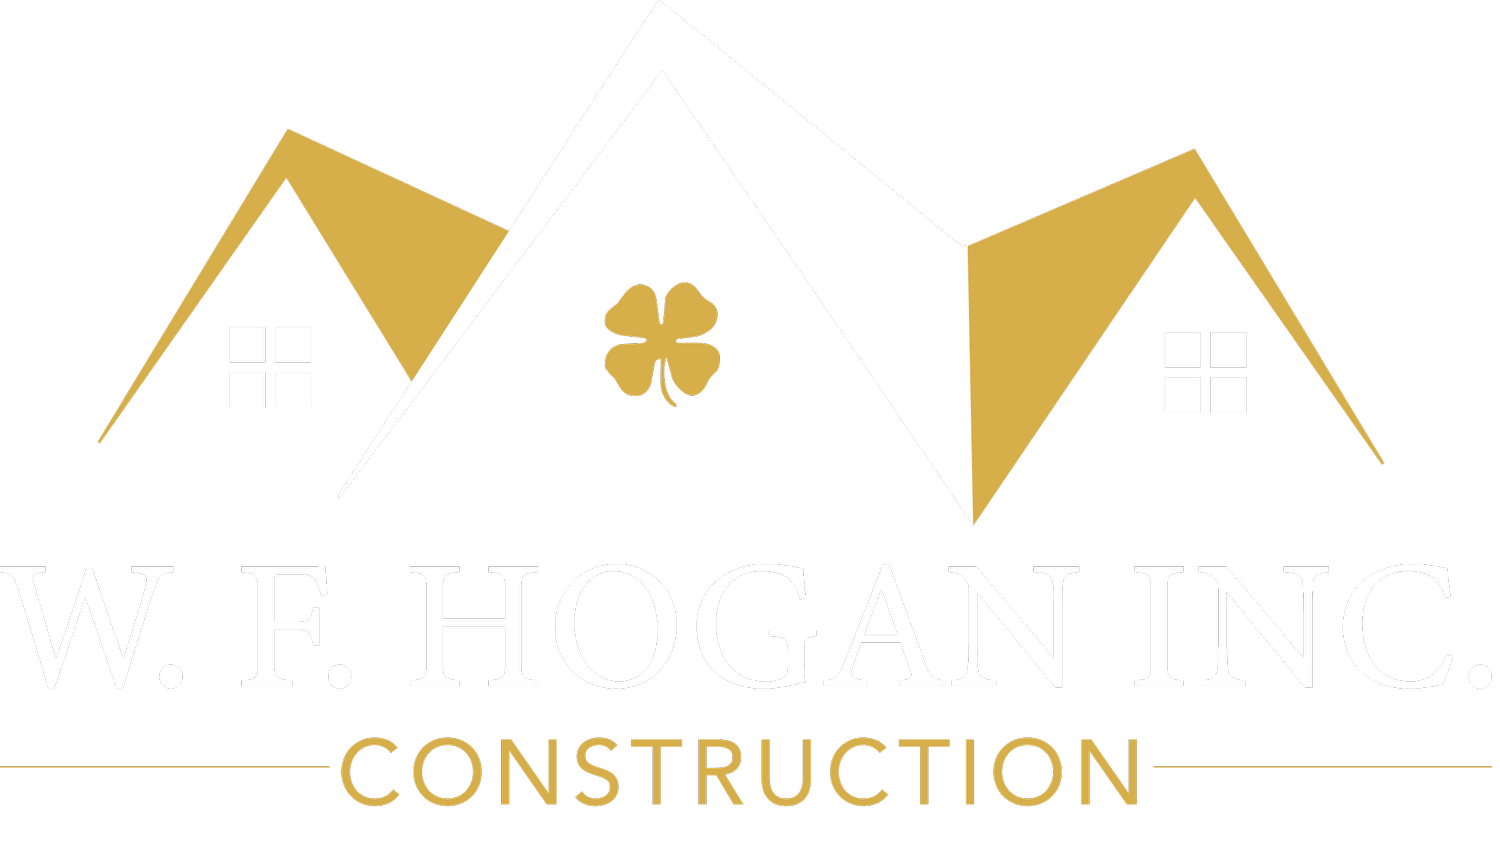 W.F.Hogan Inc